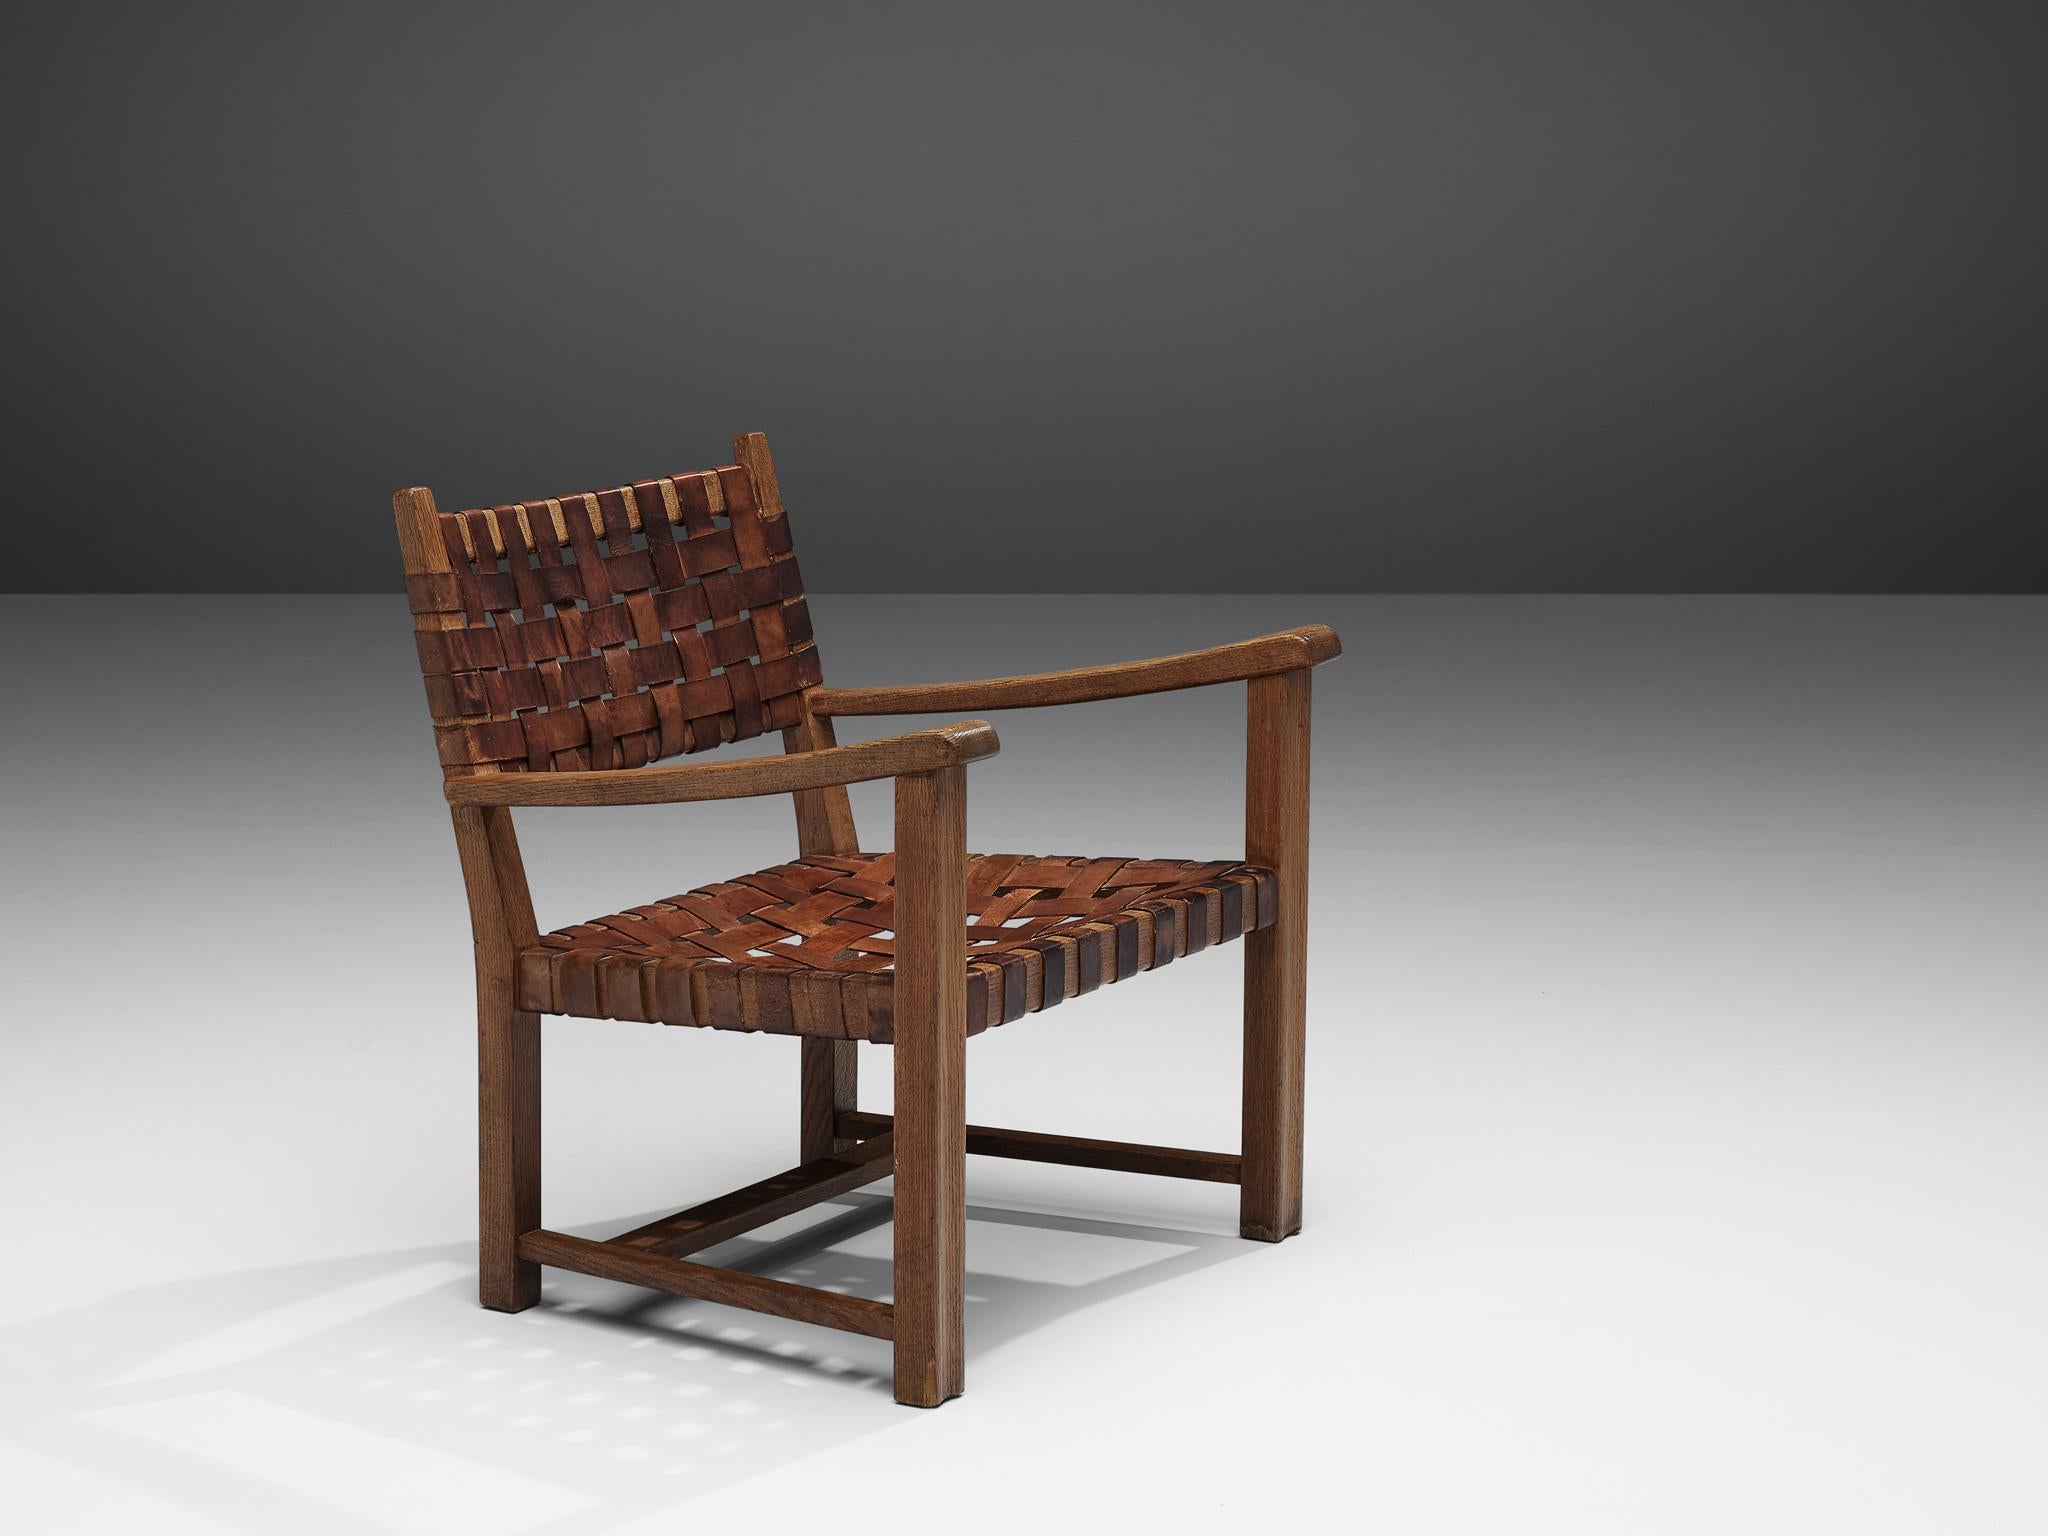 Sessel, Leder cognac, Eiche massiv, Europa, 1960er Jahre

Wunderschöner Sessel aus massiver Eiche. Dieser Sessel hat mit seinem stabilen Eichengestell ein rustikales Aussehen. Die Armlehnen sind leicht geschwungen und haben abgerundete Kanten.